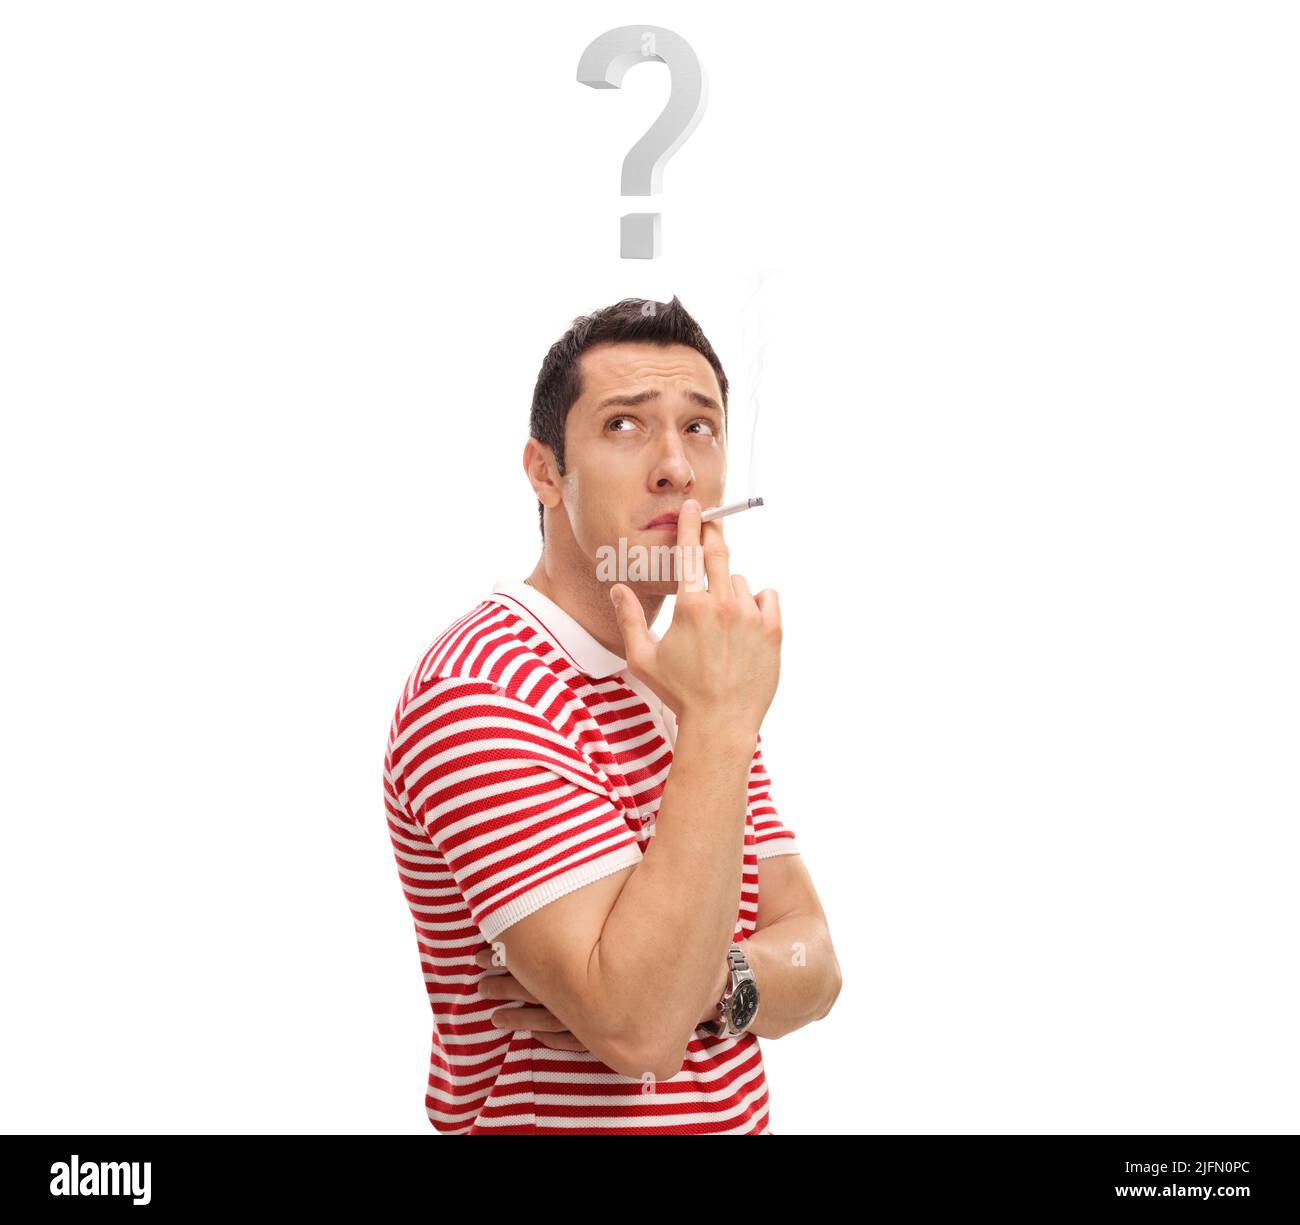 Ragazzo che fuma una sigaretta con punto interrogativo sopra la testa isolato su sfondo bianco Foto Stock